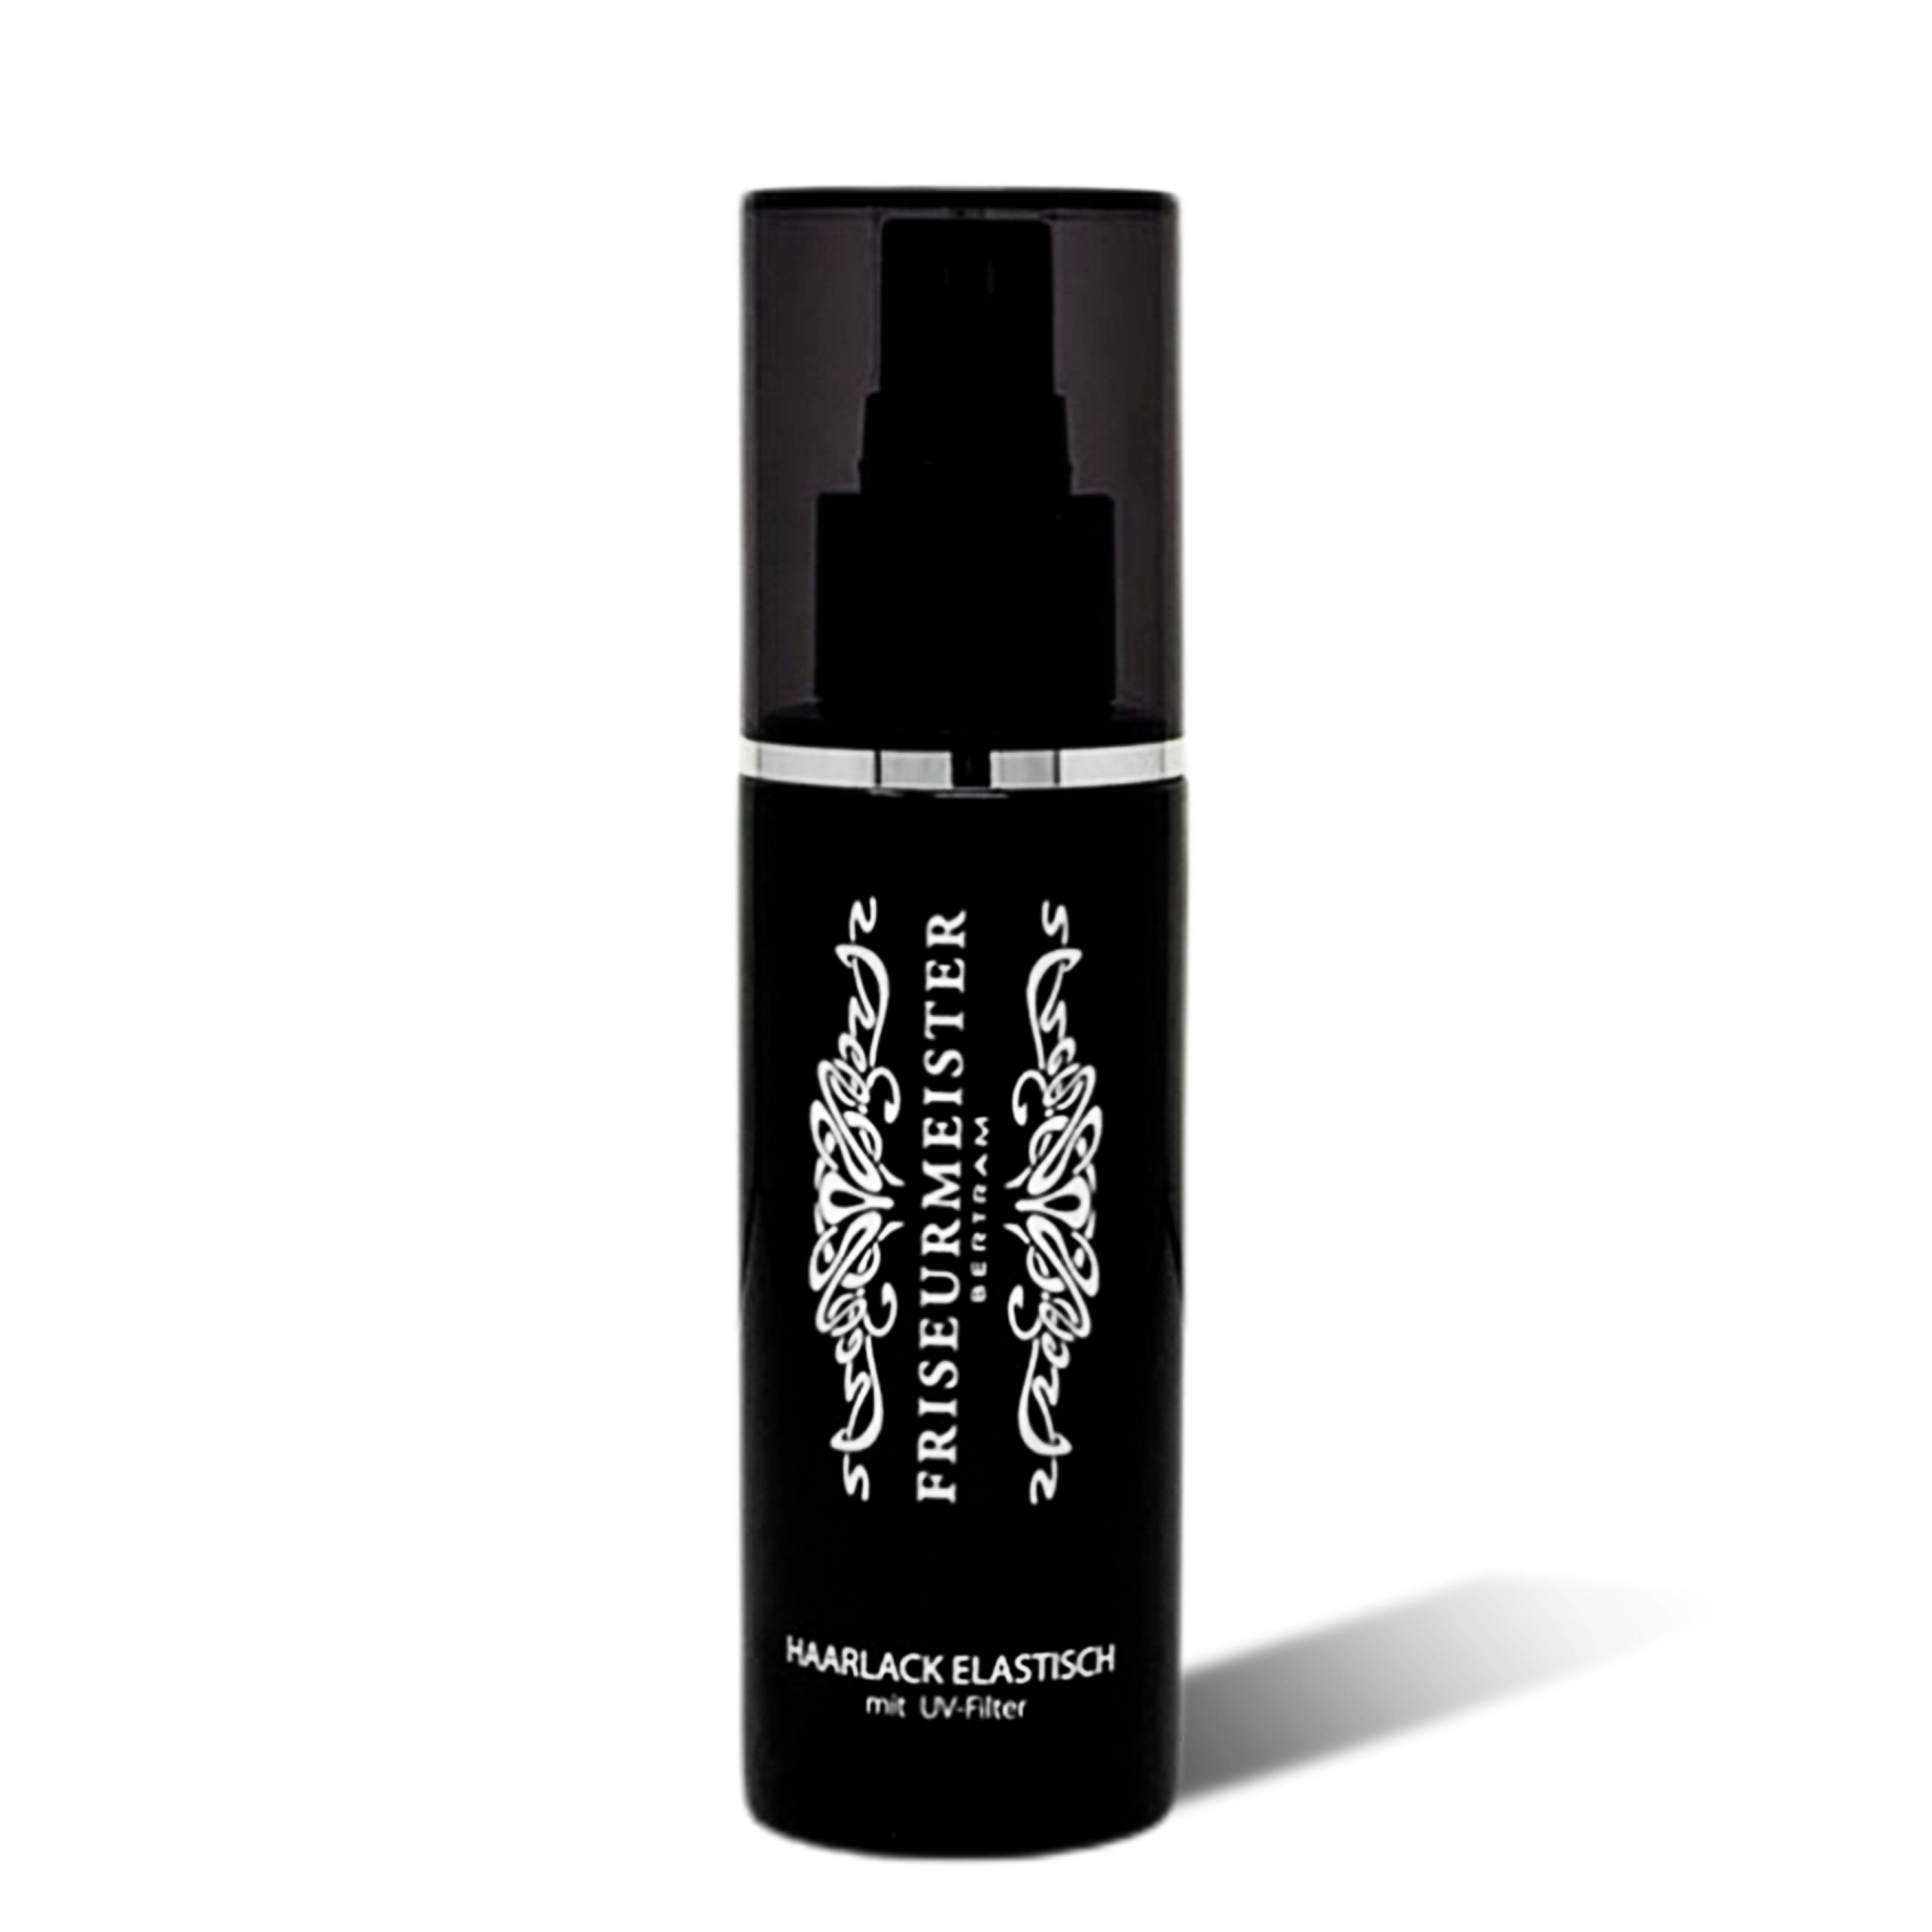 Friseurmeister Haarpflege-Spray Haarlack elastisch mit UV Filter 100ml - verhindert Nachfetten, Tägliche Haarpflege, leichte Kämmbarkeit, Schützt Ihr Haar vor Sonnenstrahlen